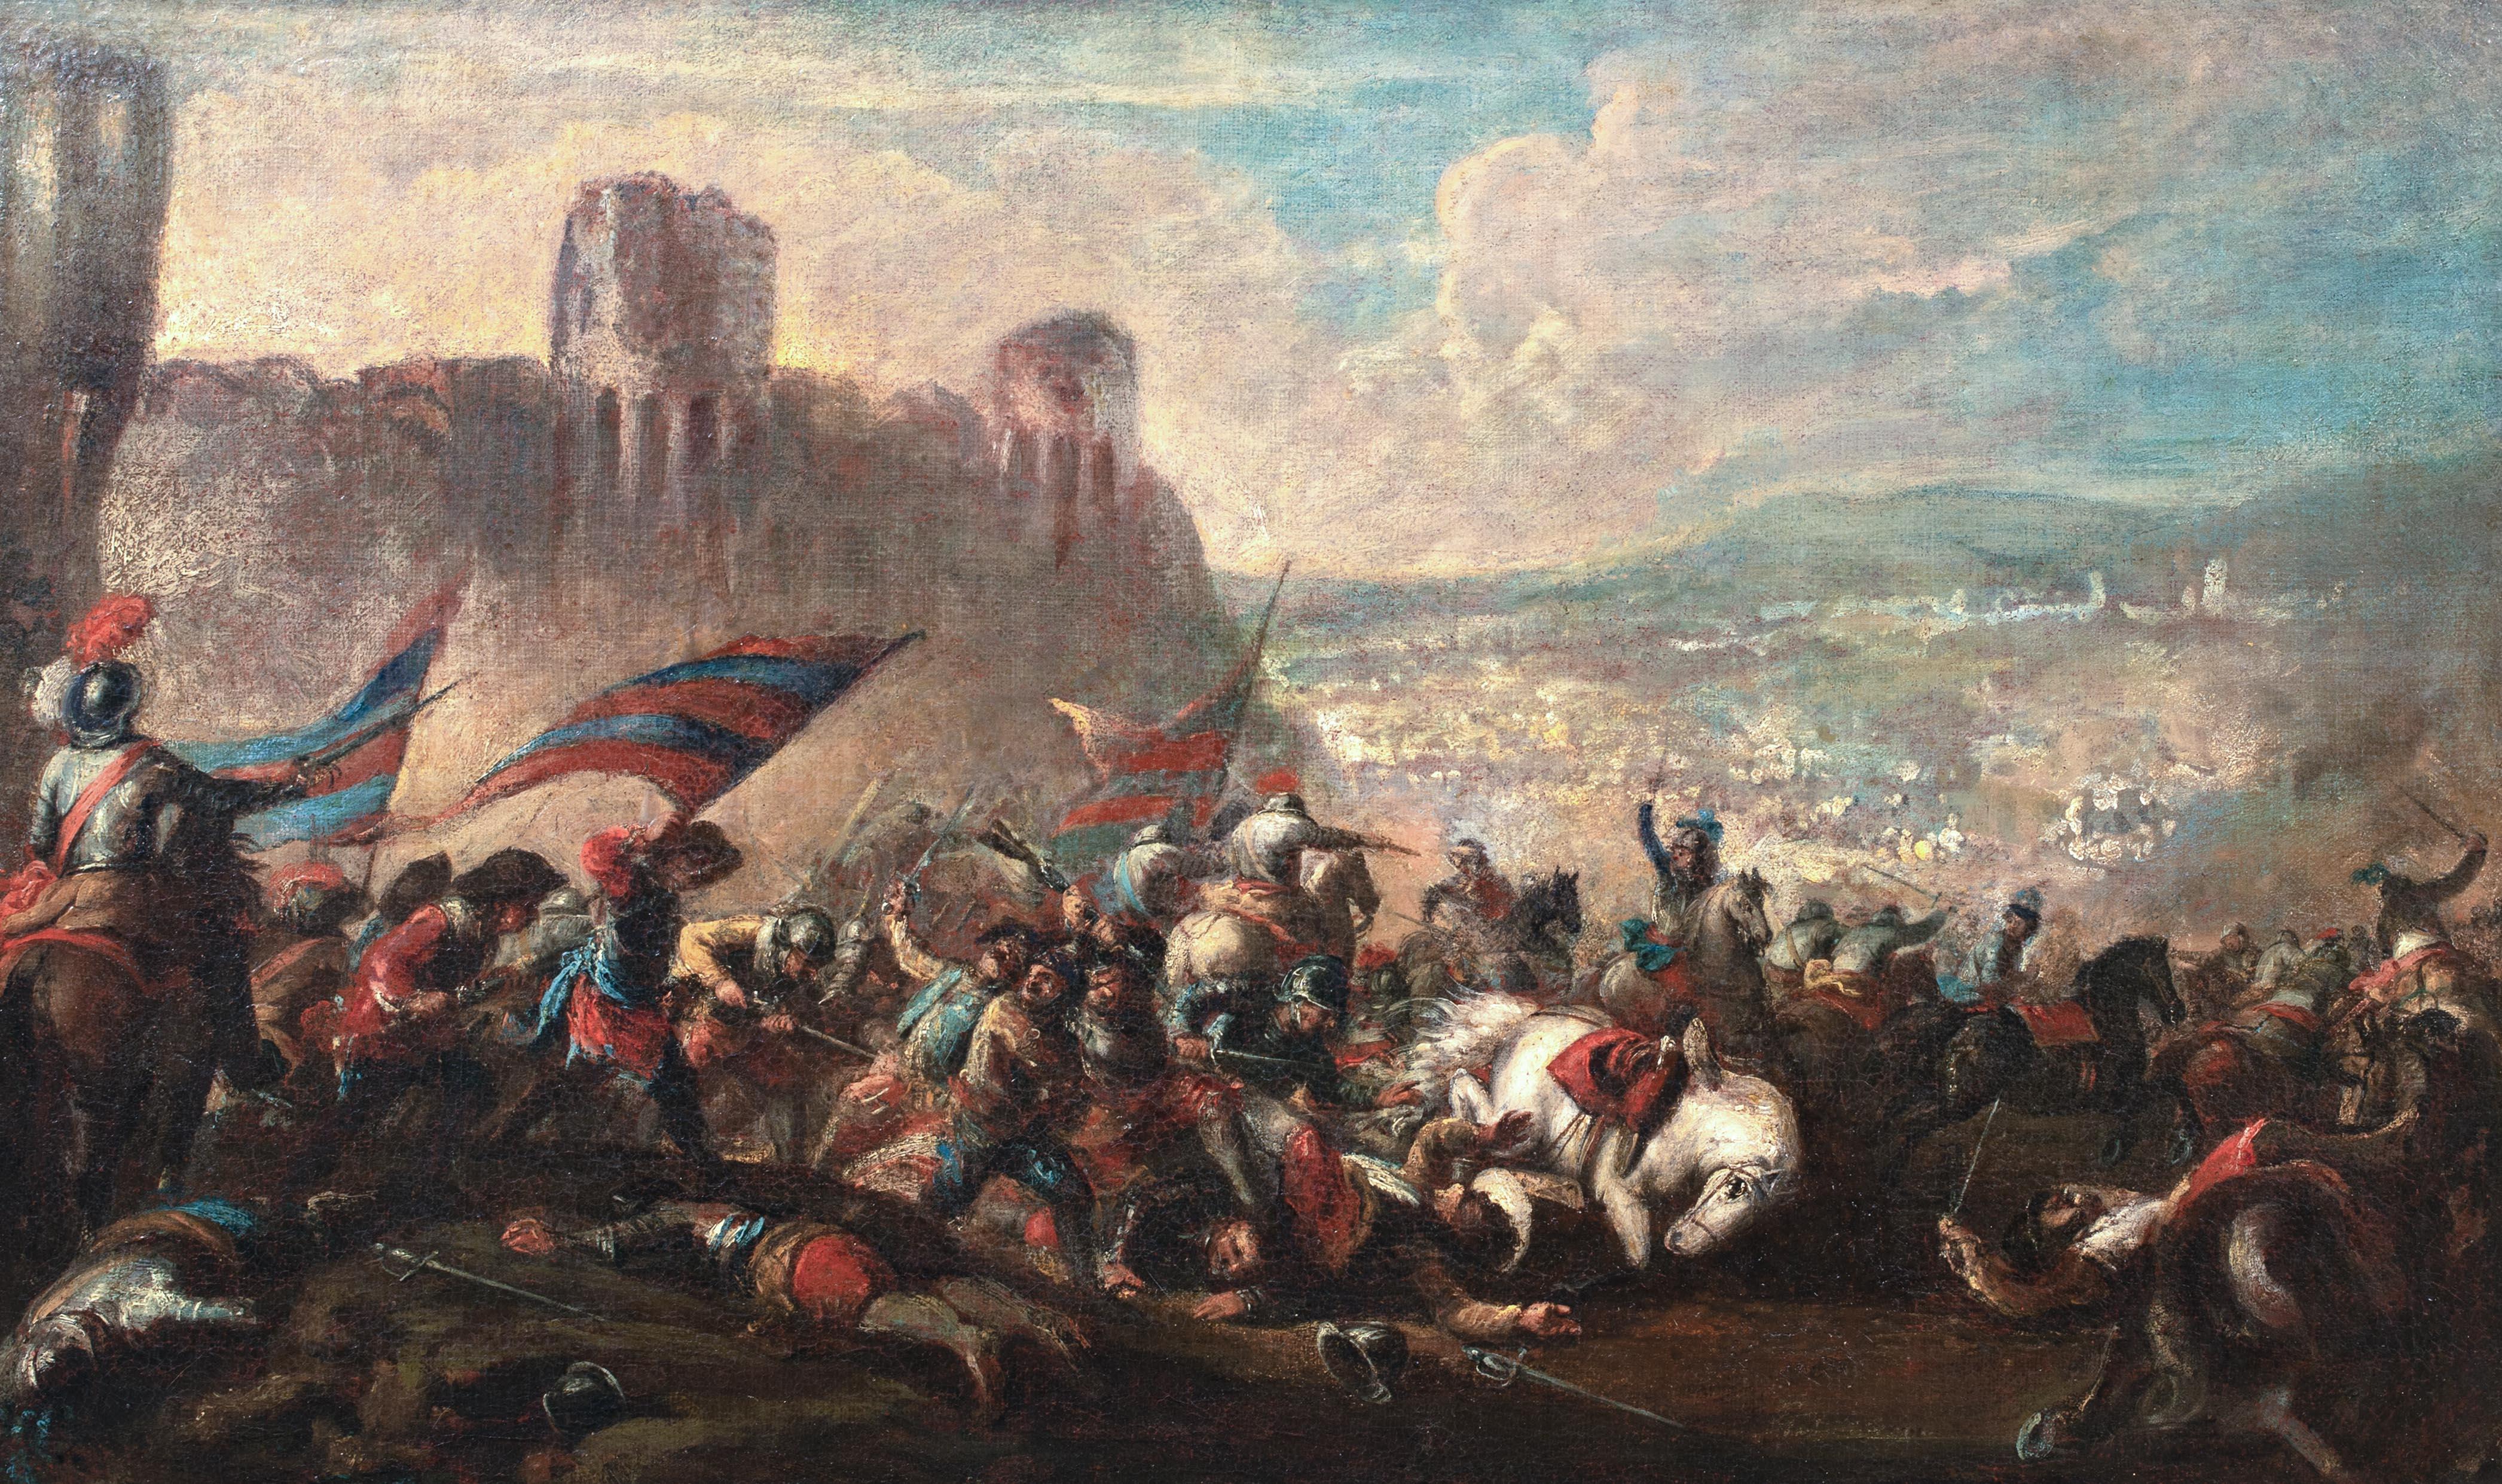 Die Schlacht bei Nördlingen (1634), Dreißigjähriger Krieg, 17. Jahrhundert

Kreis von Jacques COURTOIS (1621-1676)

Großes europäisches Altmeistergemälde aus dem 17. Jahrhundert mit der Schlacht bei Nördlingen aus dem Dreißigjährigen Krieg, Öl auf